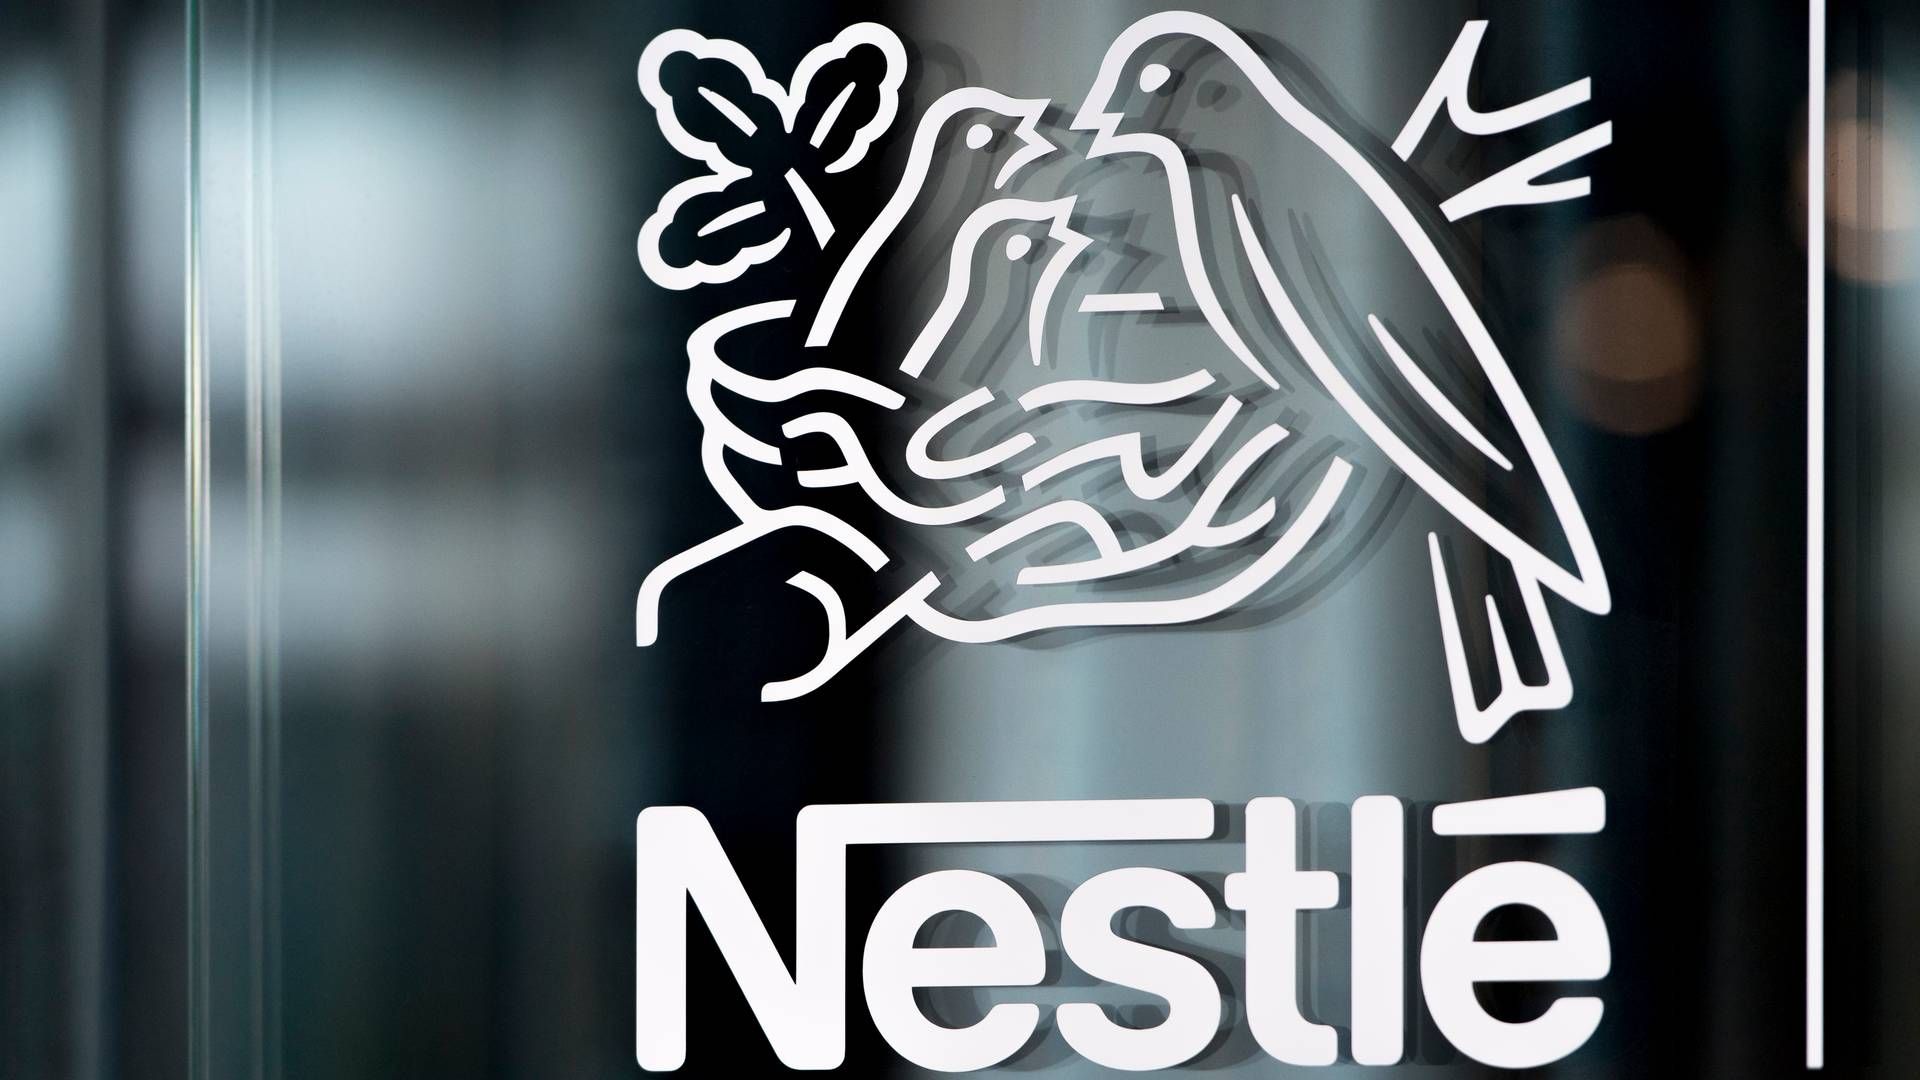 Den sveitsiske mat- og drikkegiganten Nestlé får kritikk av en menneskerettighetsorganisasjon for å tilsette sukker i babymat i flere ikke-vestlig land. | Foto: Laurent Gillieron